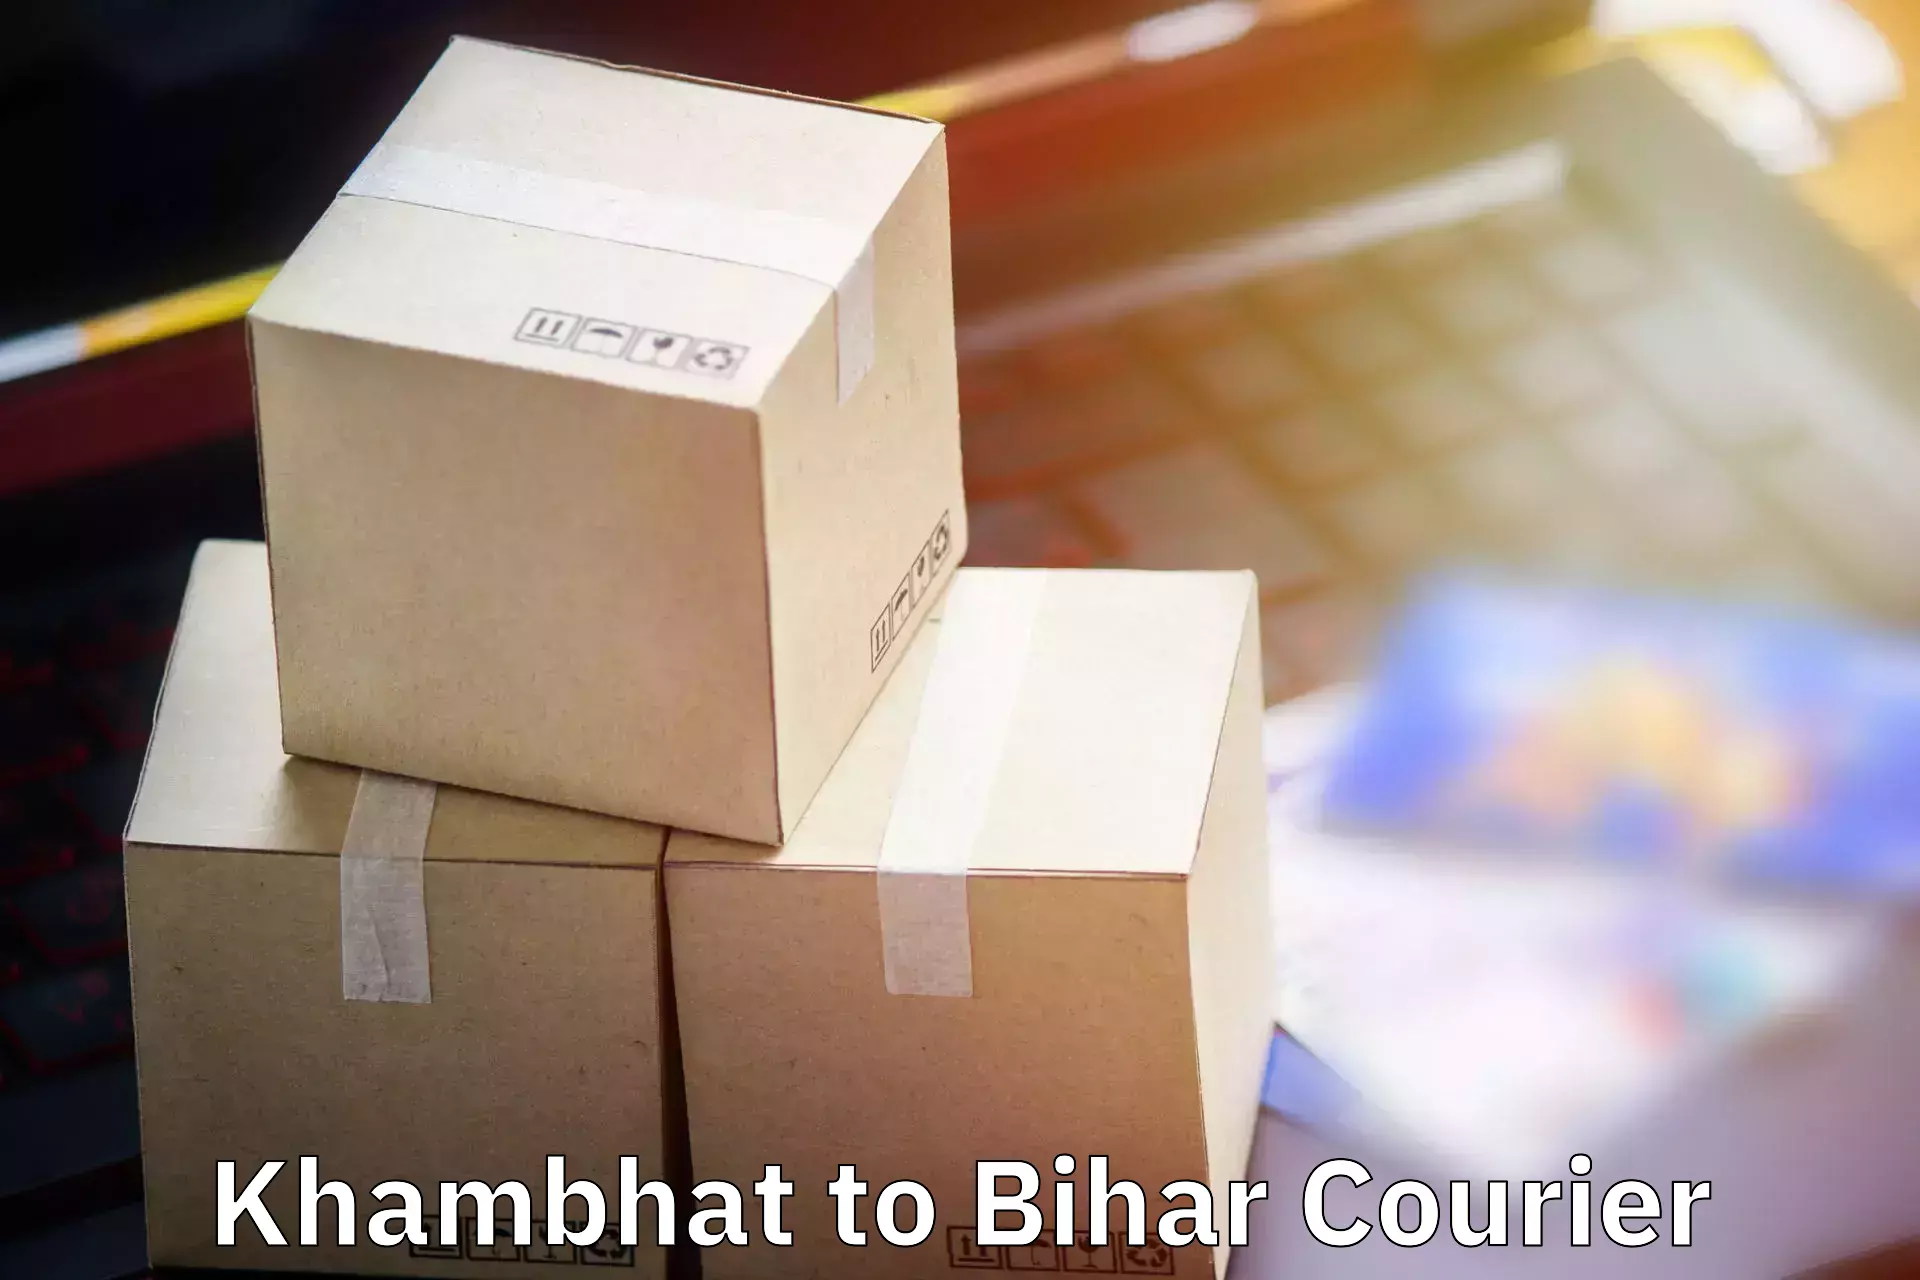 Luggage shipping estimate Khambhat to Kharagpur Munger